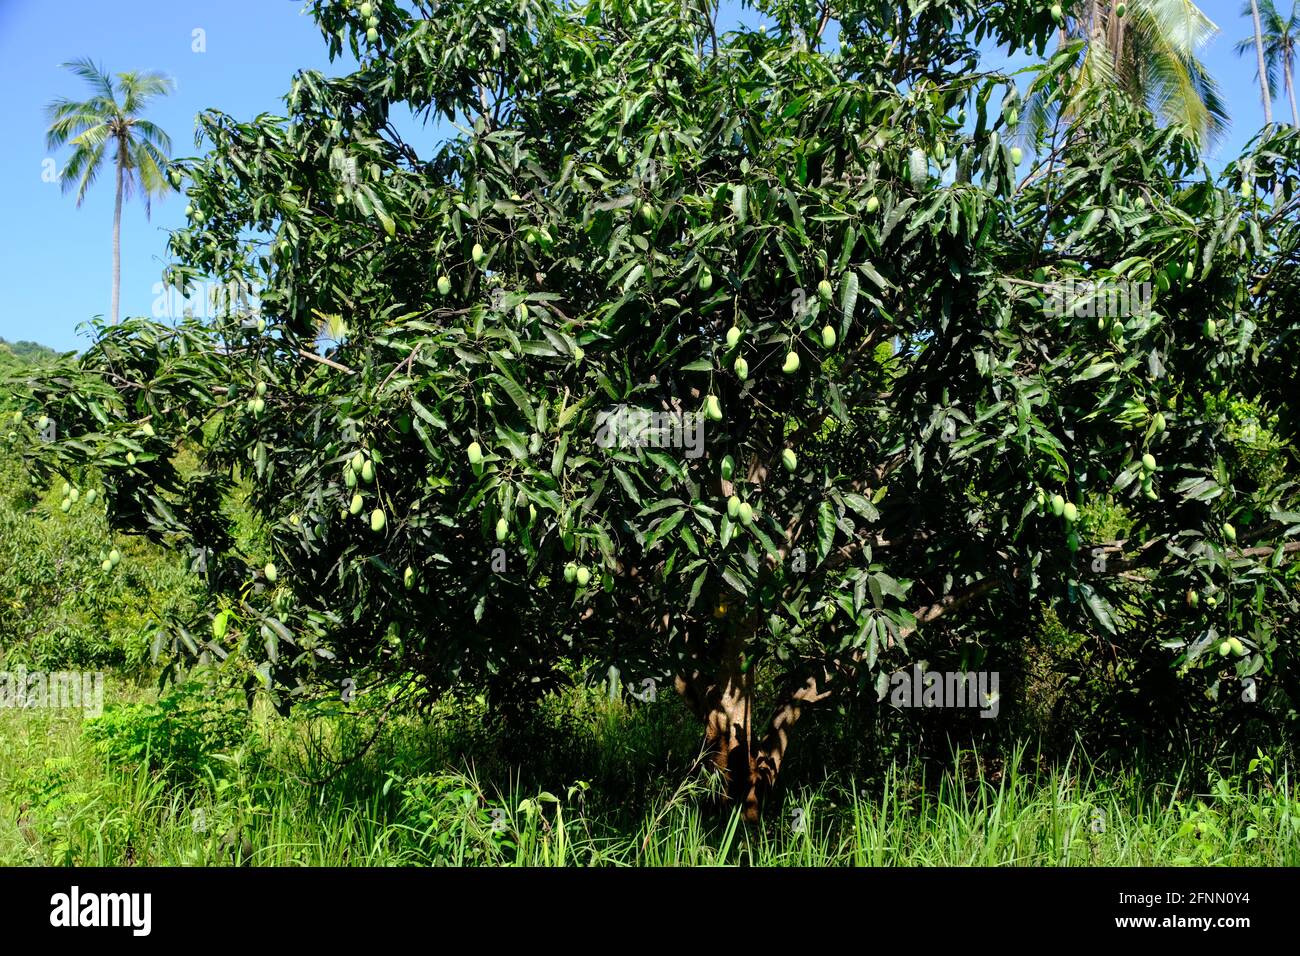 Indonesia Isole Anambas - albero di mango con frutta - Mangifera indica Foto Stock